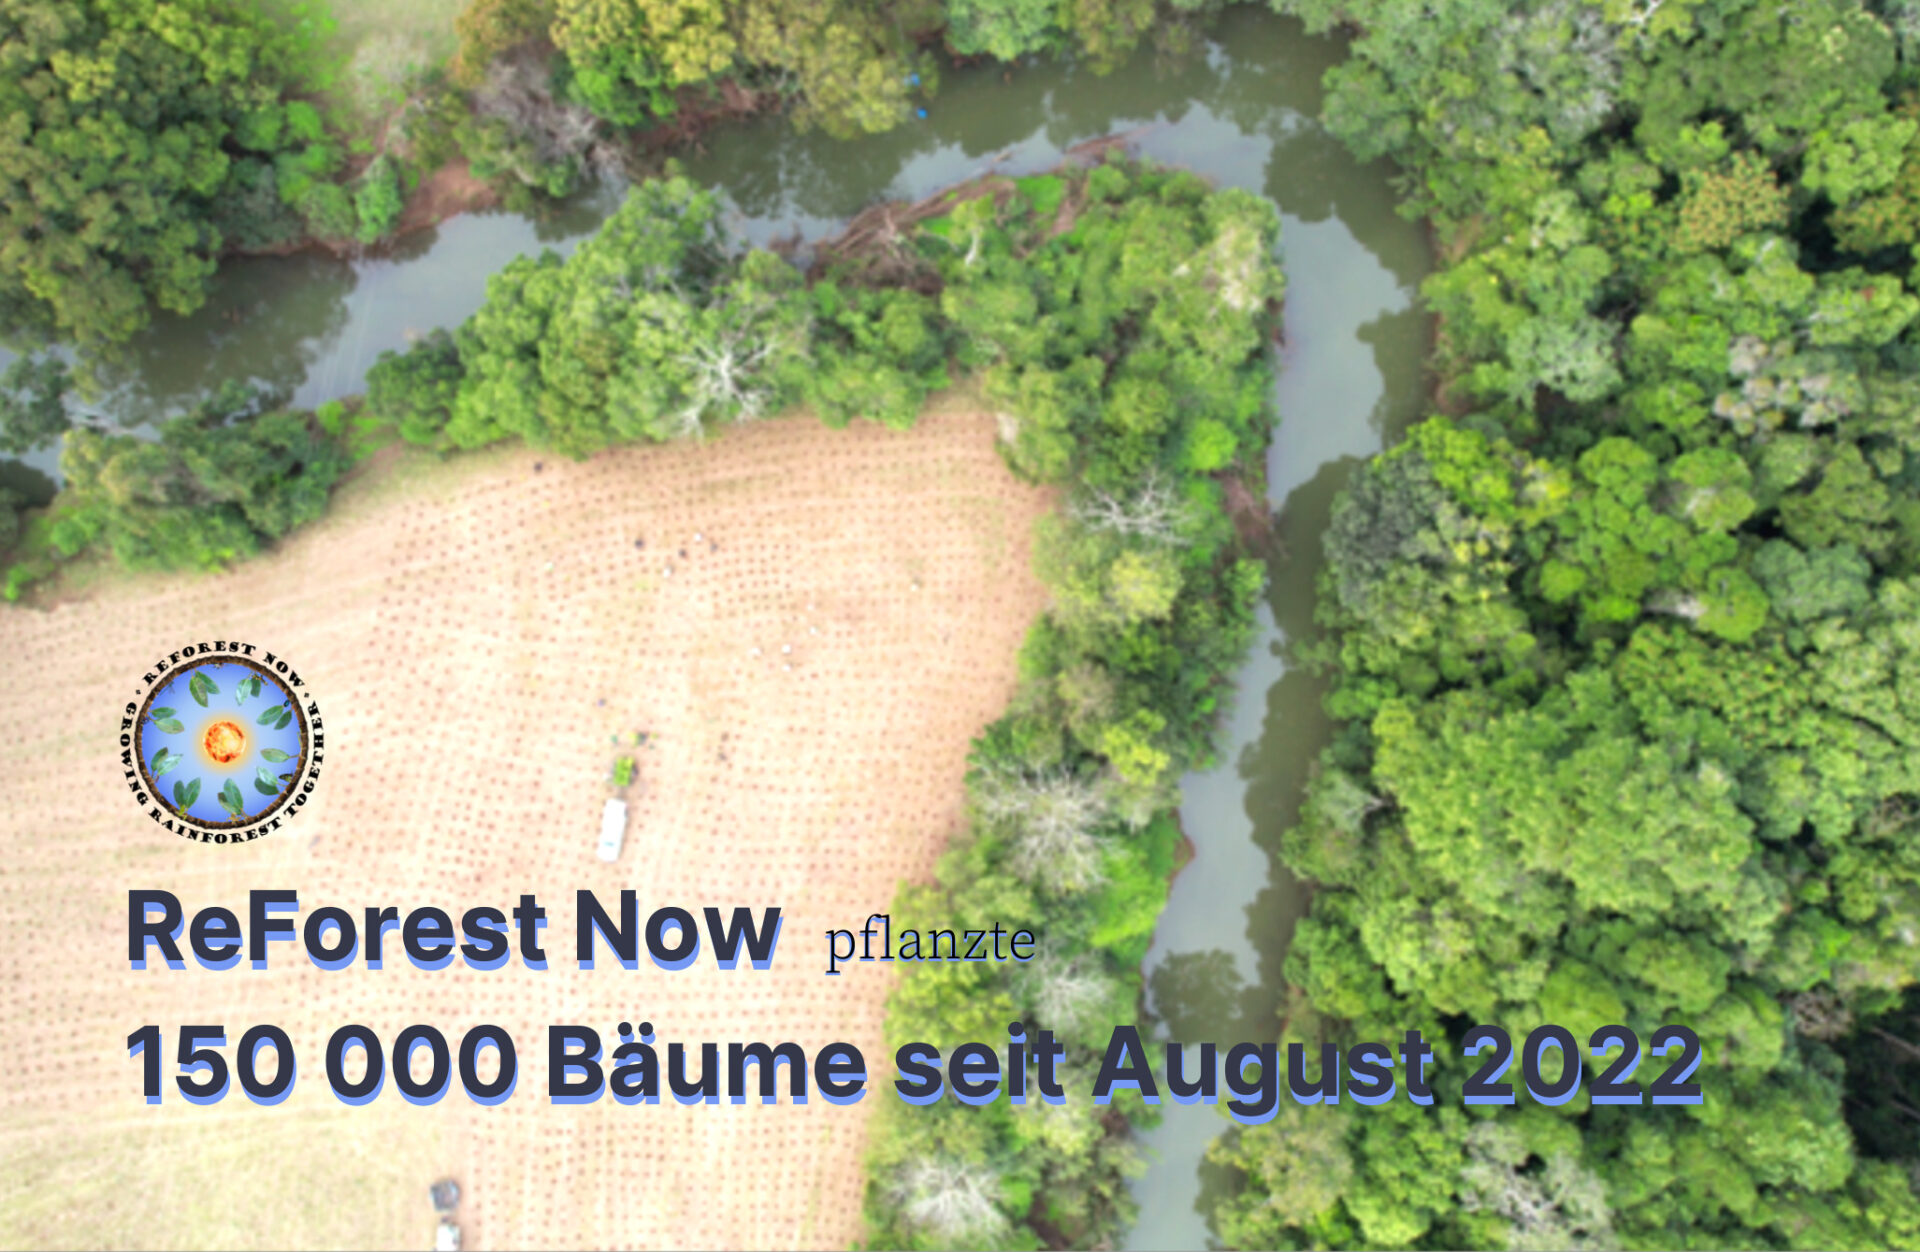 ReForest Now hat seit August 2022 bereits 150000 Bäume gepflanzt